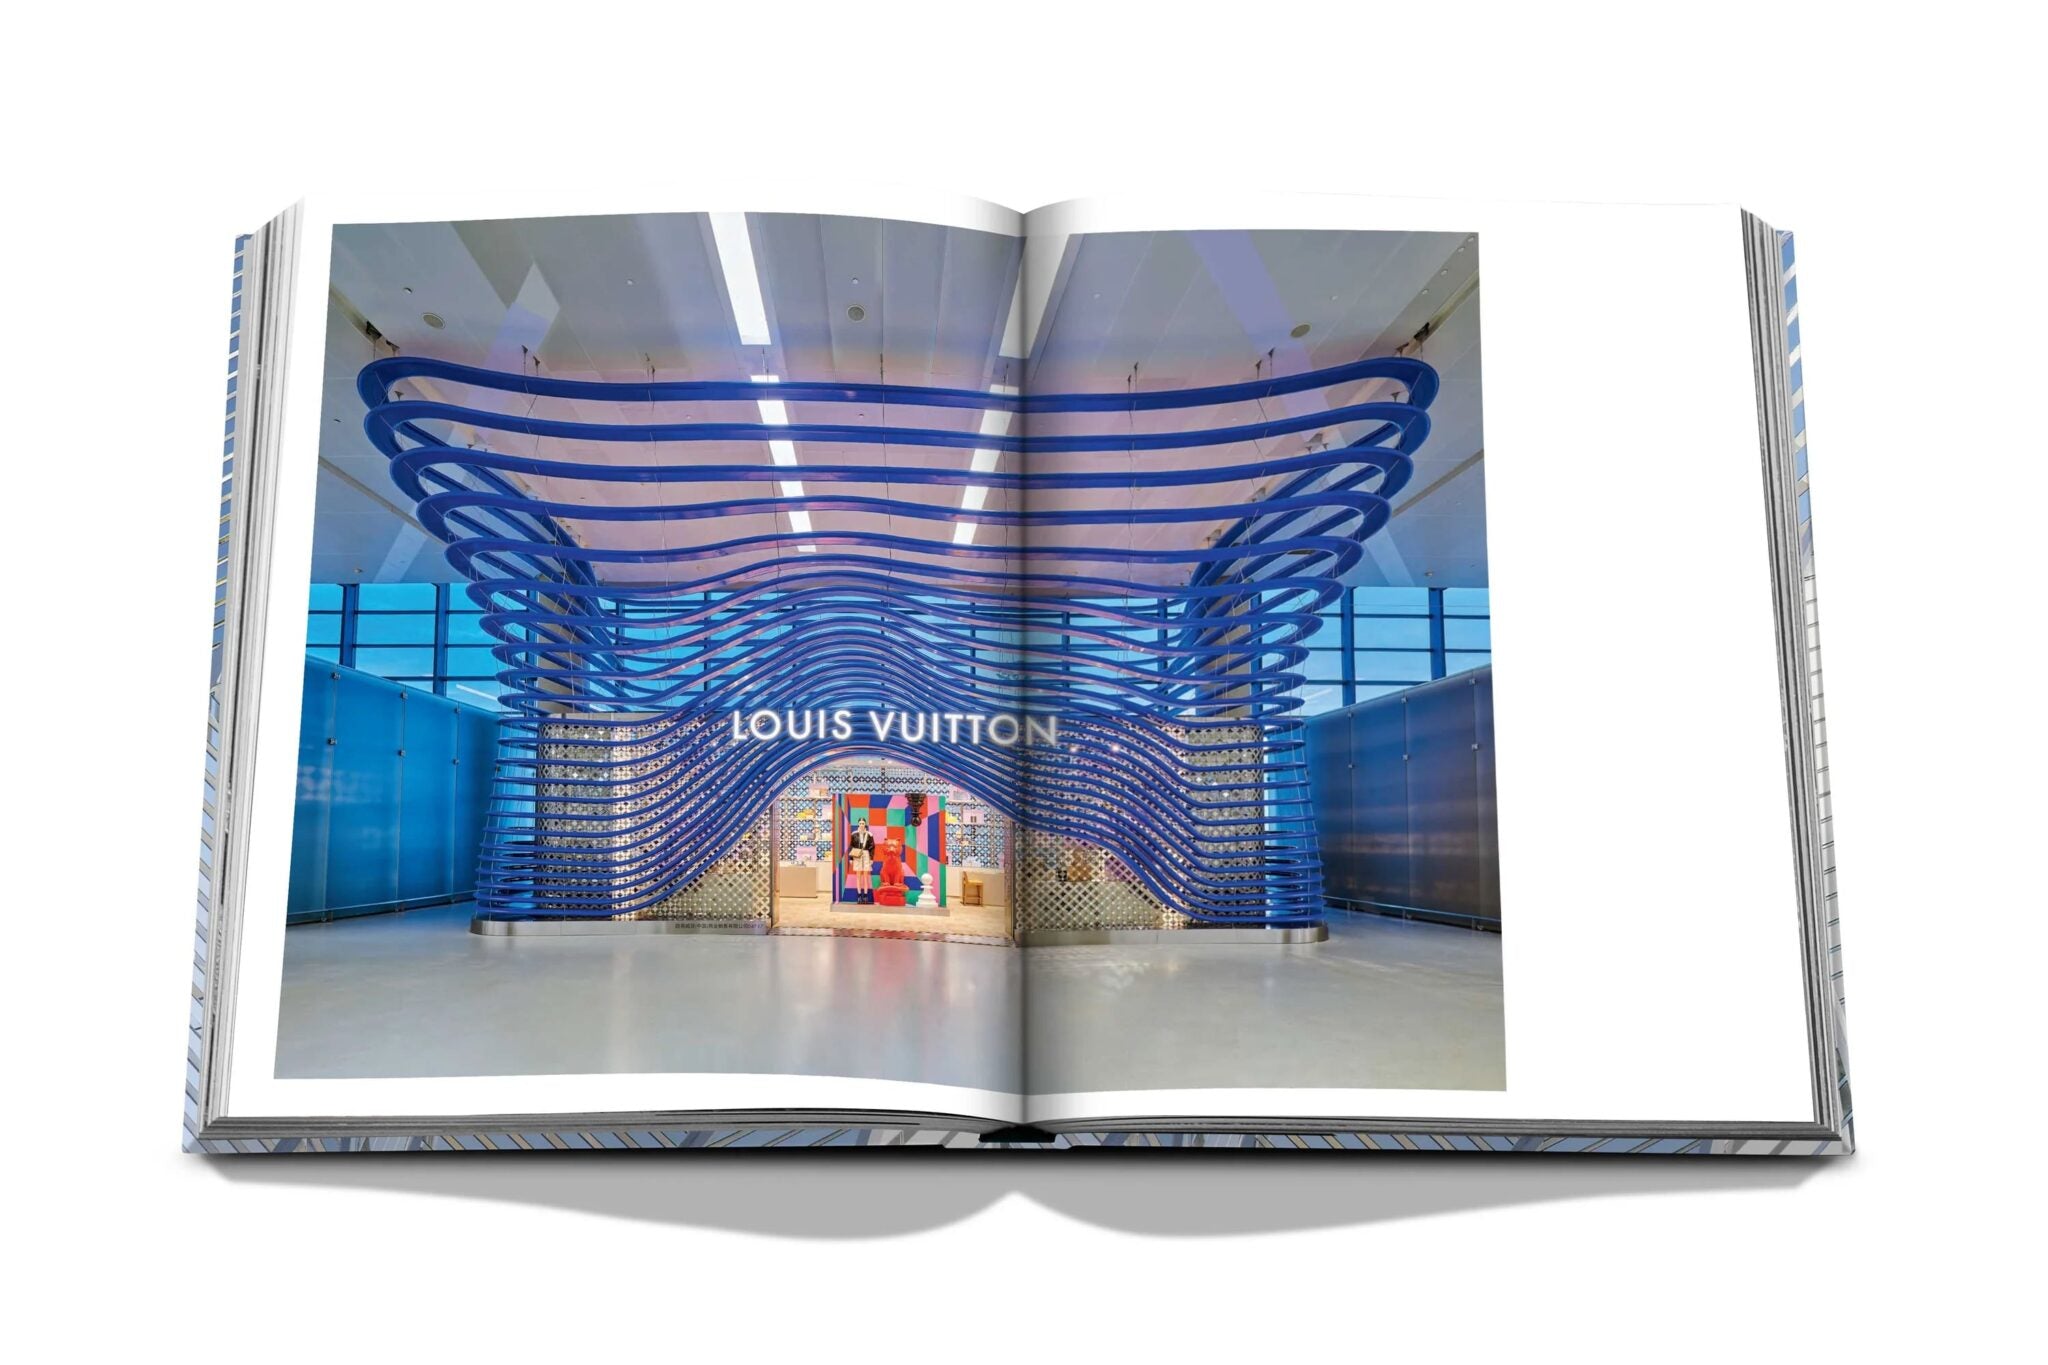 Assouline Louis Vuitton Skin : Architecture du luxe (édition New York)